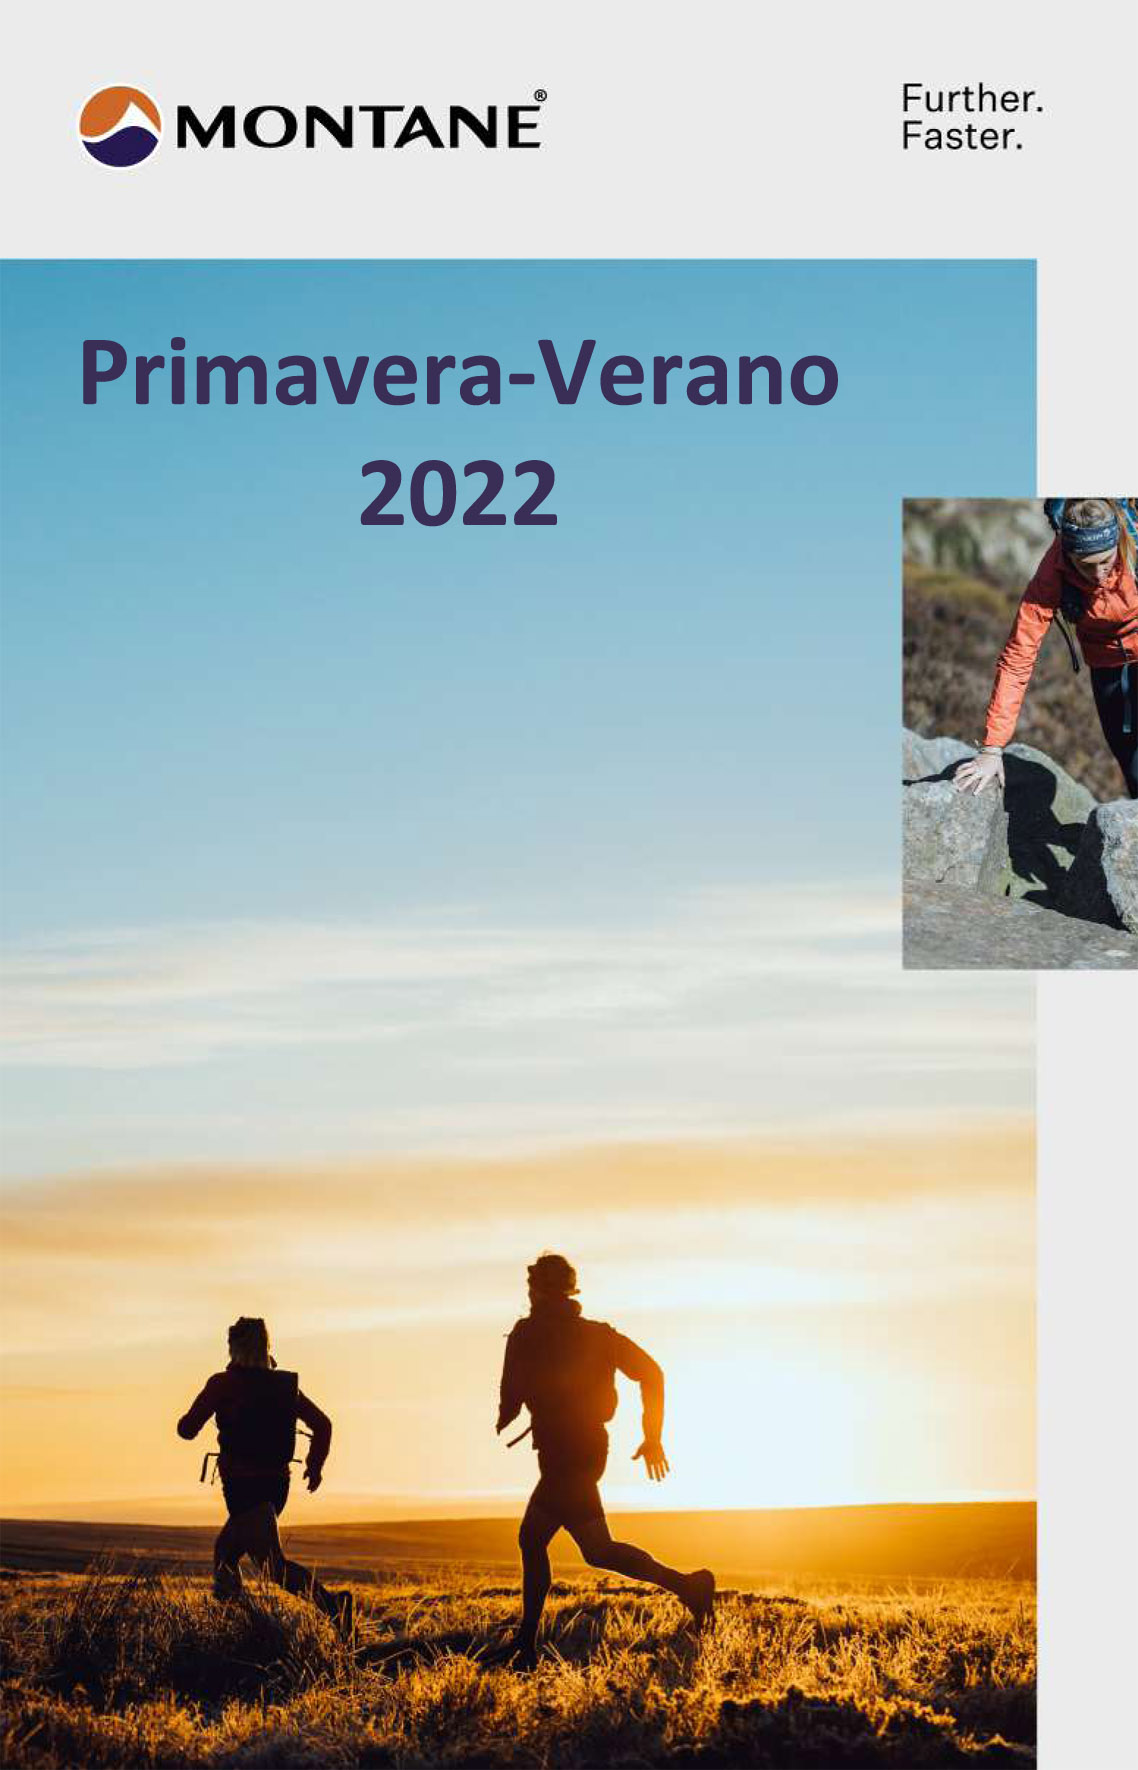 Montane - Primavera/Verano 2022